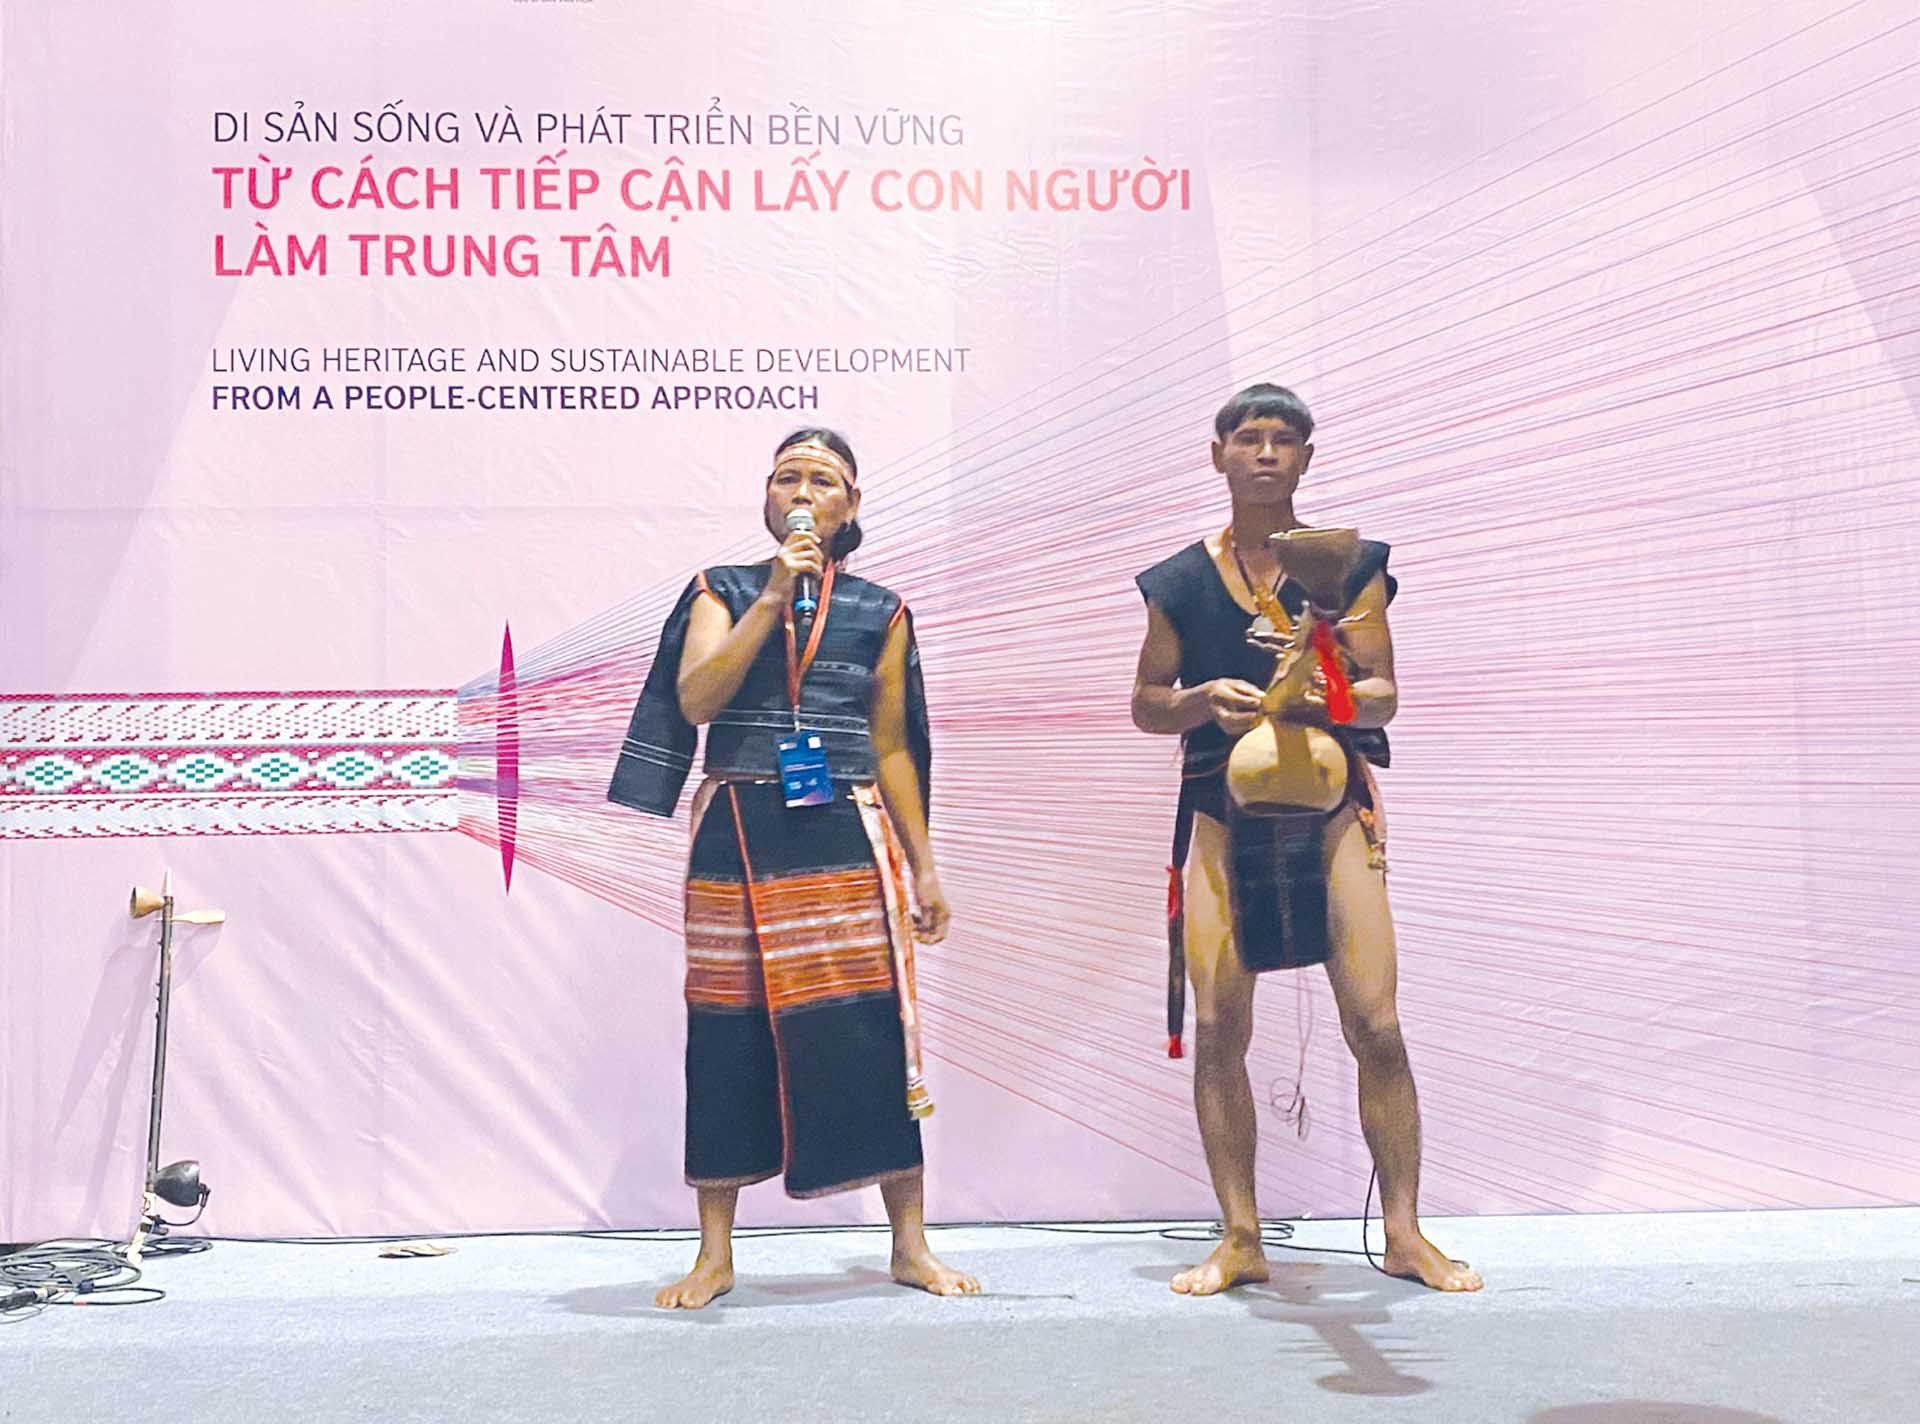 Nghệ nhân Đinh Thị Mênh và nghệ nhân Đinh Văn Minh thể hiện bài hát “Khai thác mường rẫy”.